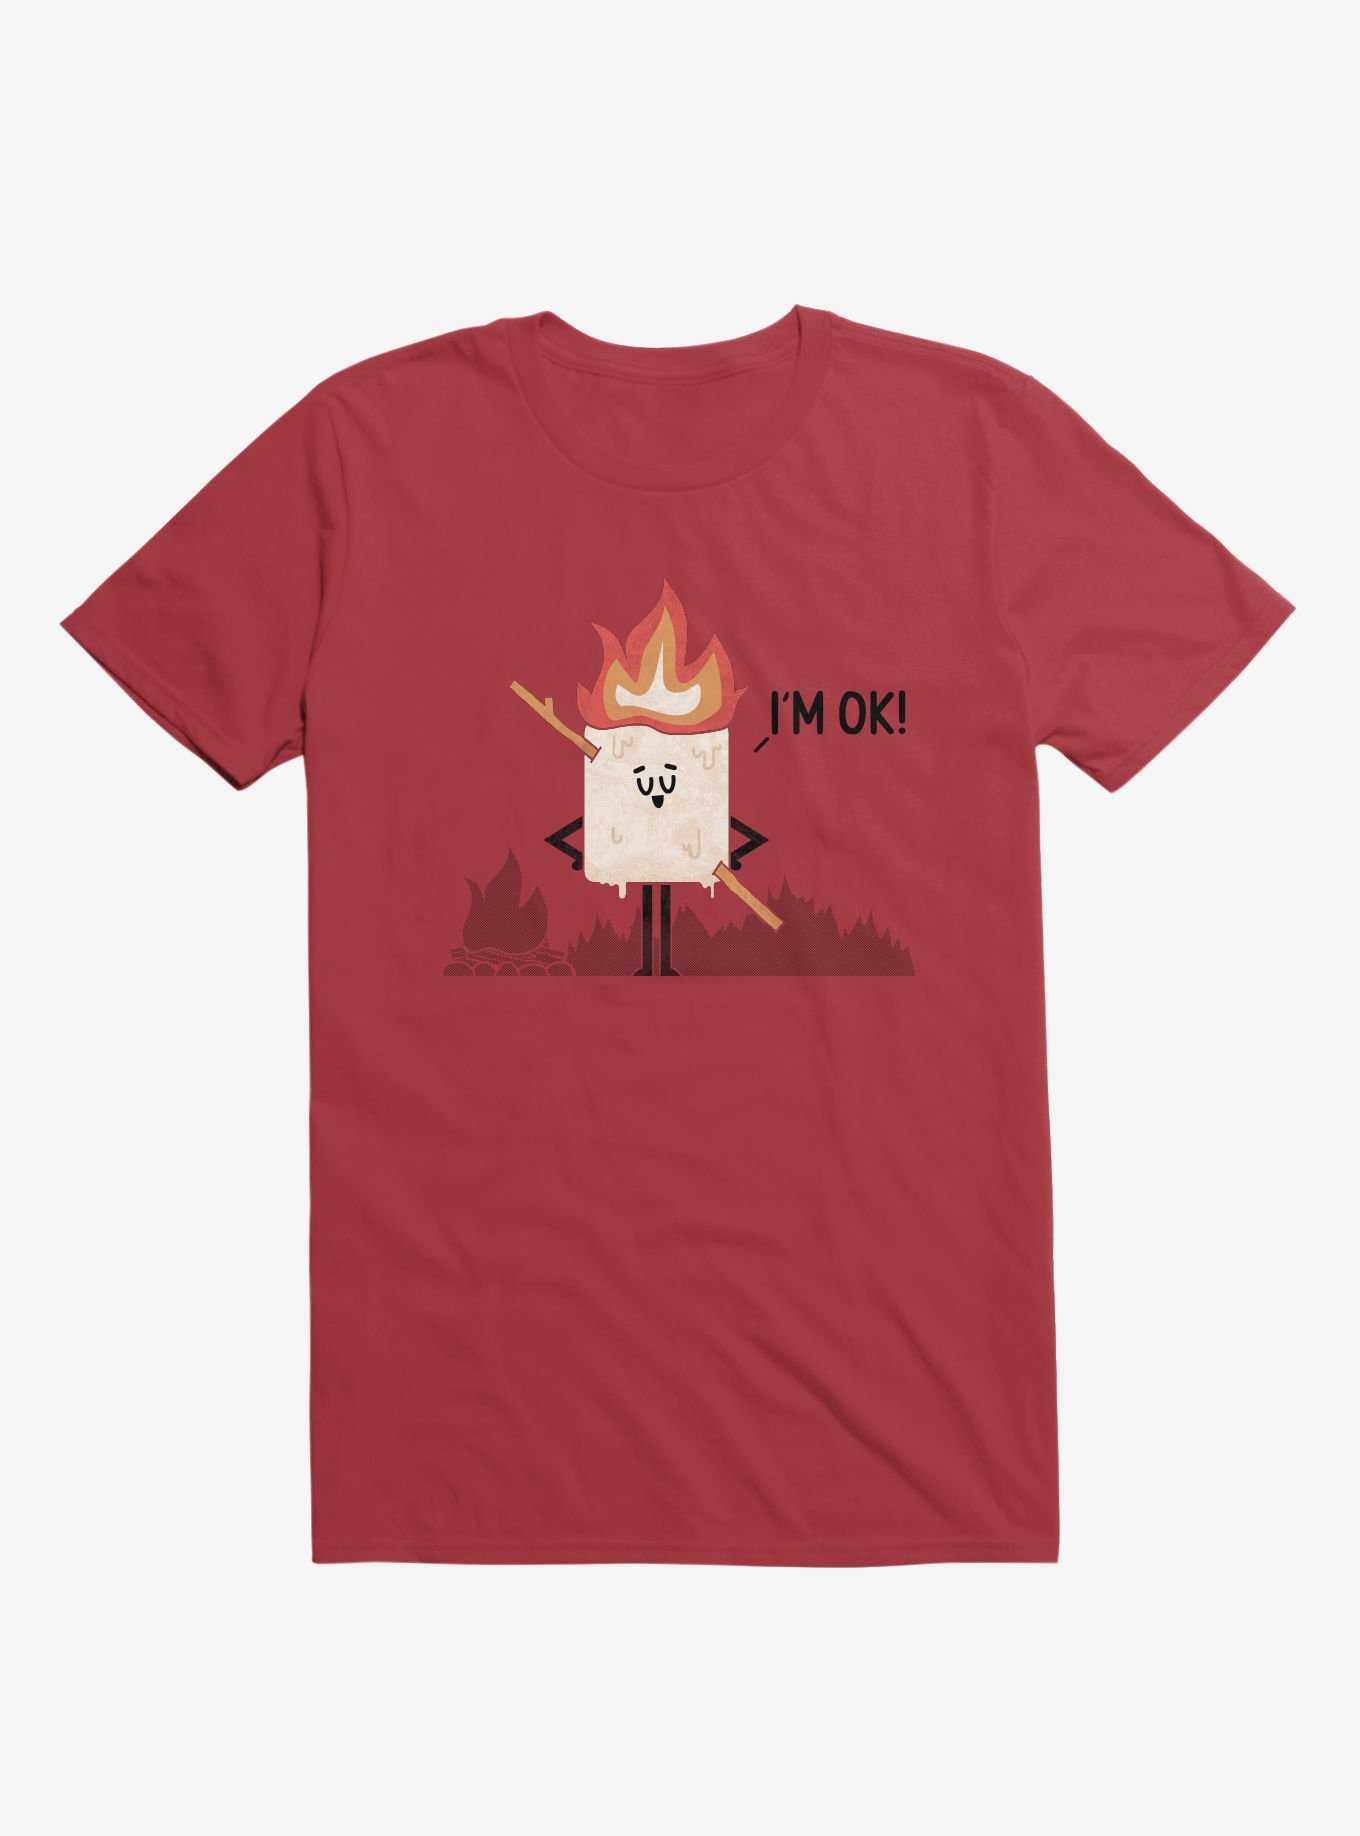 I'm OK! Campfire S'more Red T-Shirt, , hi-res